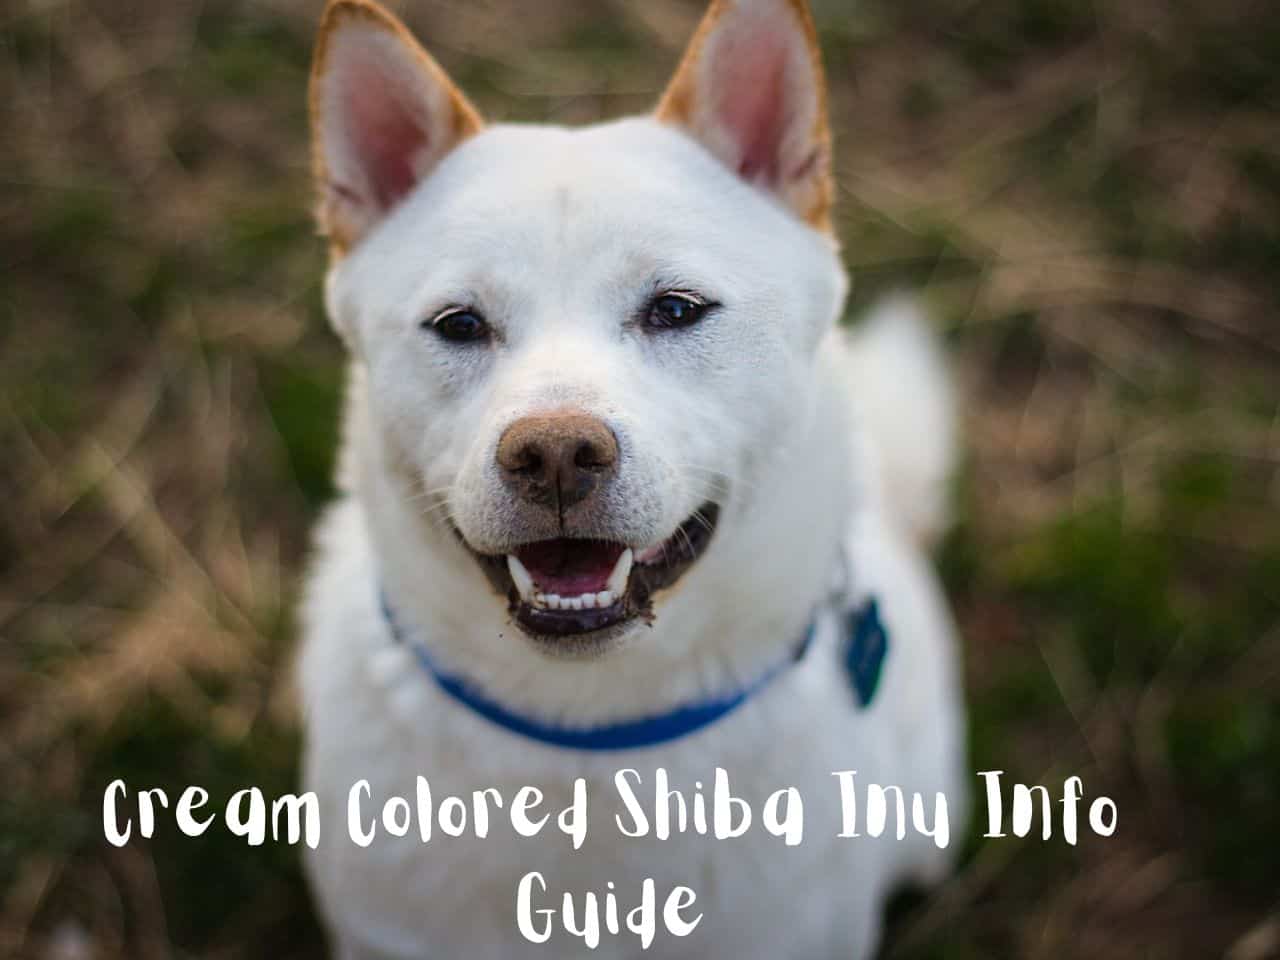 Cream Colored Shiba Inu